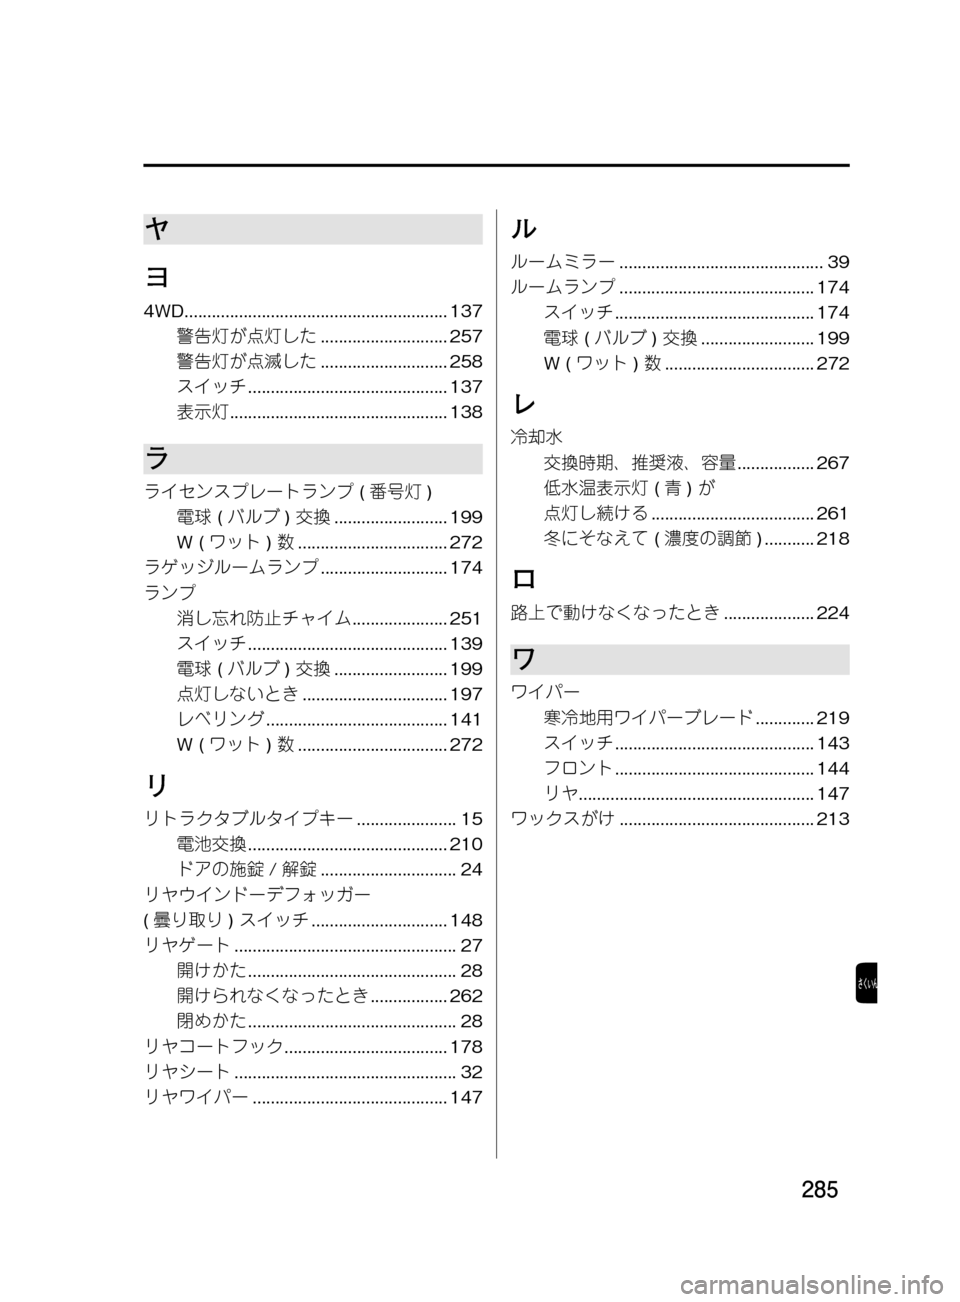 MAZDA MODEL DEMIO 2011  デミオ｜取扱説明書 (in Japanese) ���
��P�S�N��/�P���% 